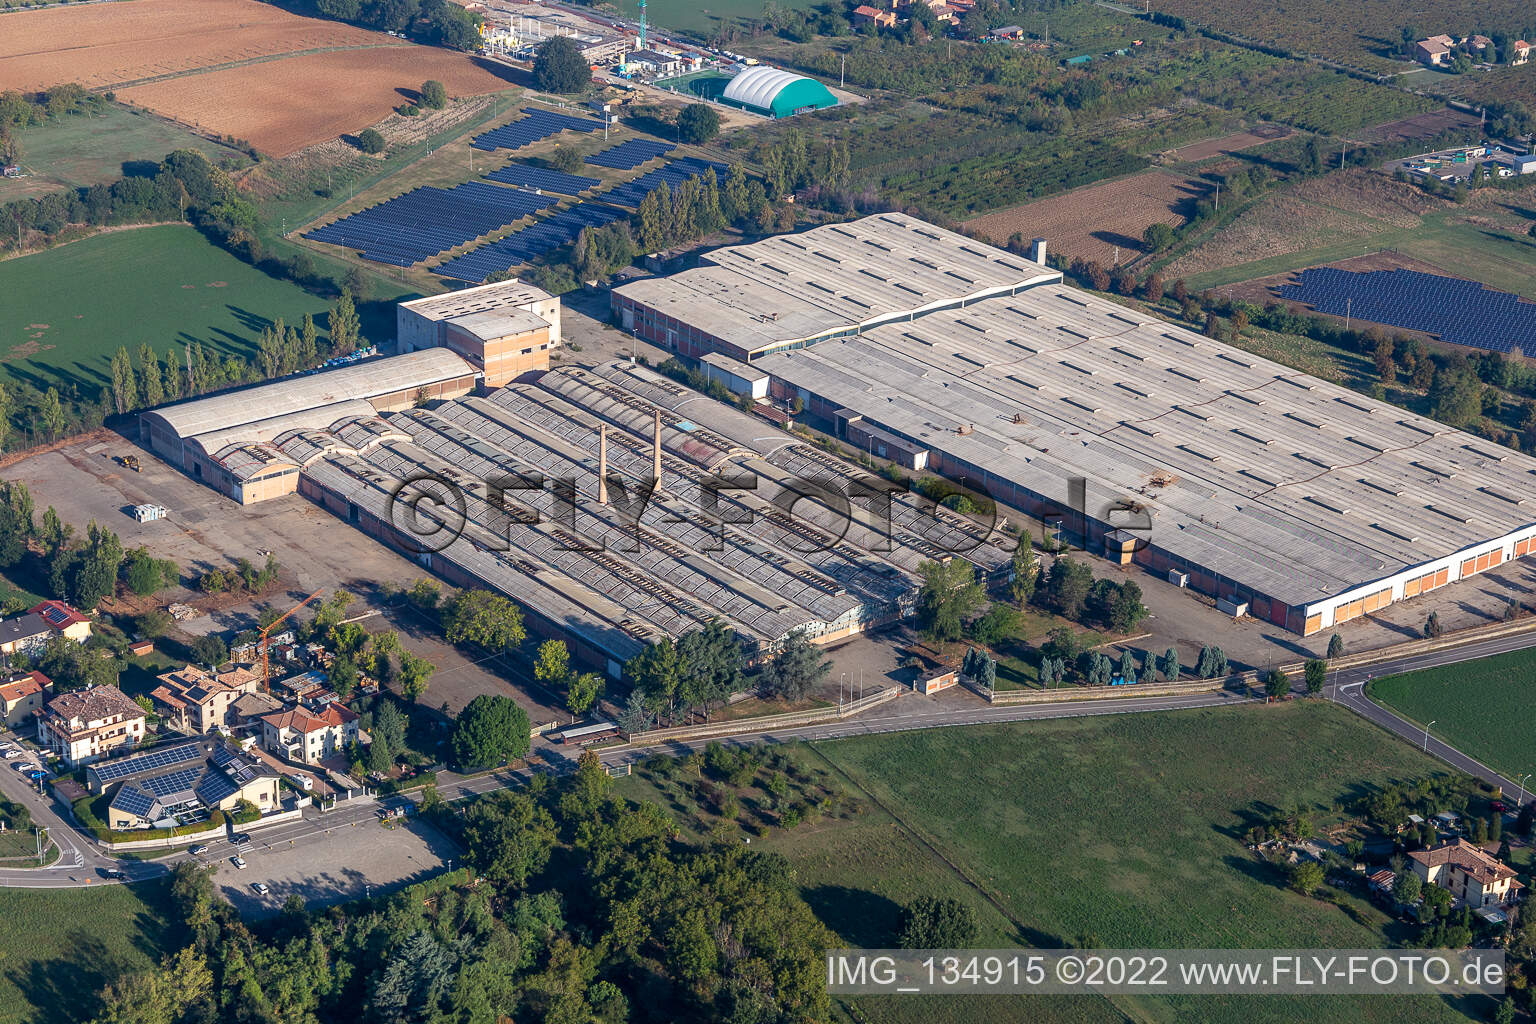 Disused factory in Gorzano in Maranello in the state Modena, Italy